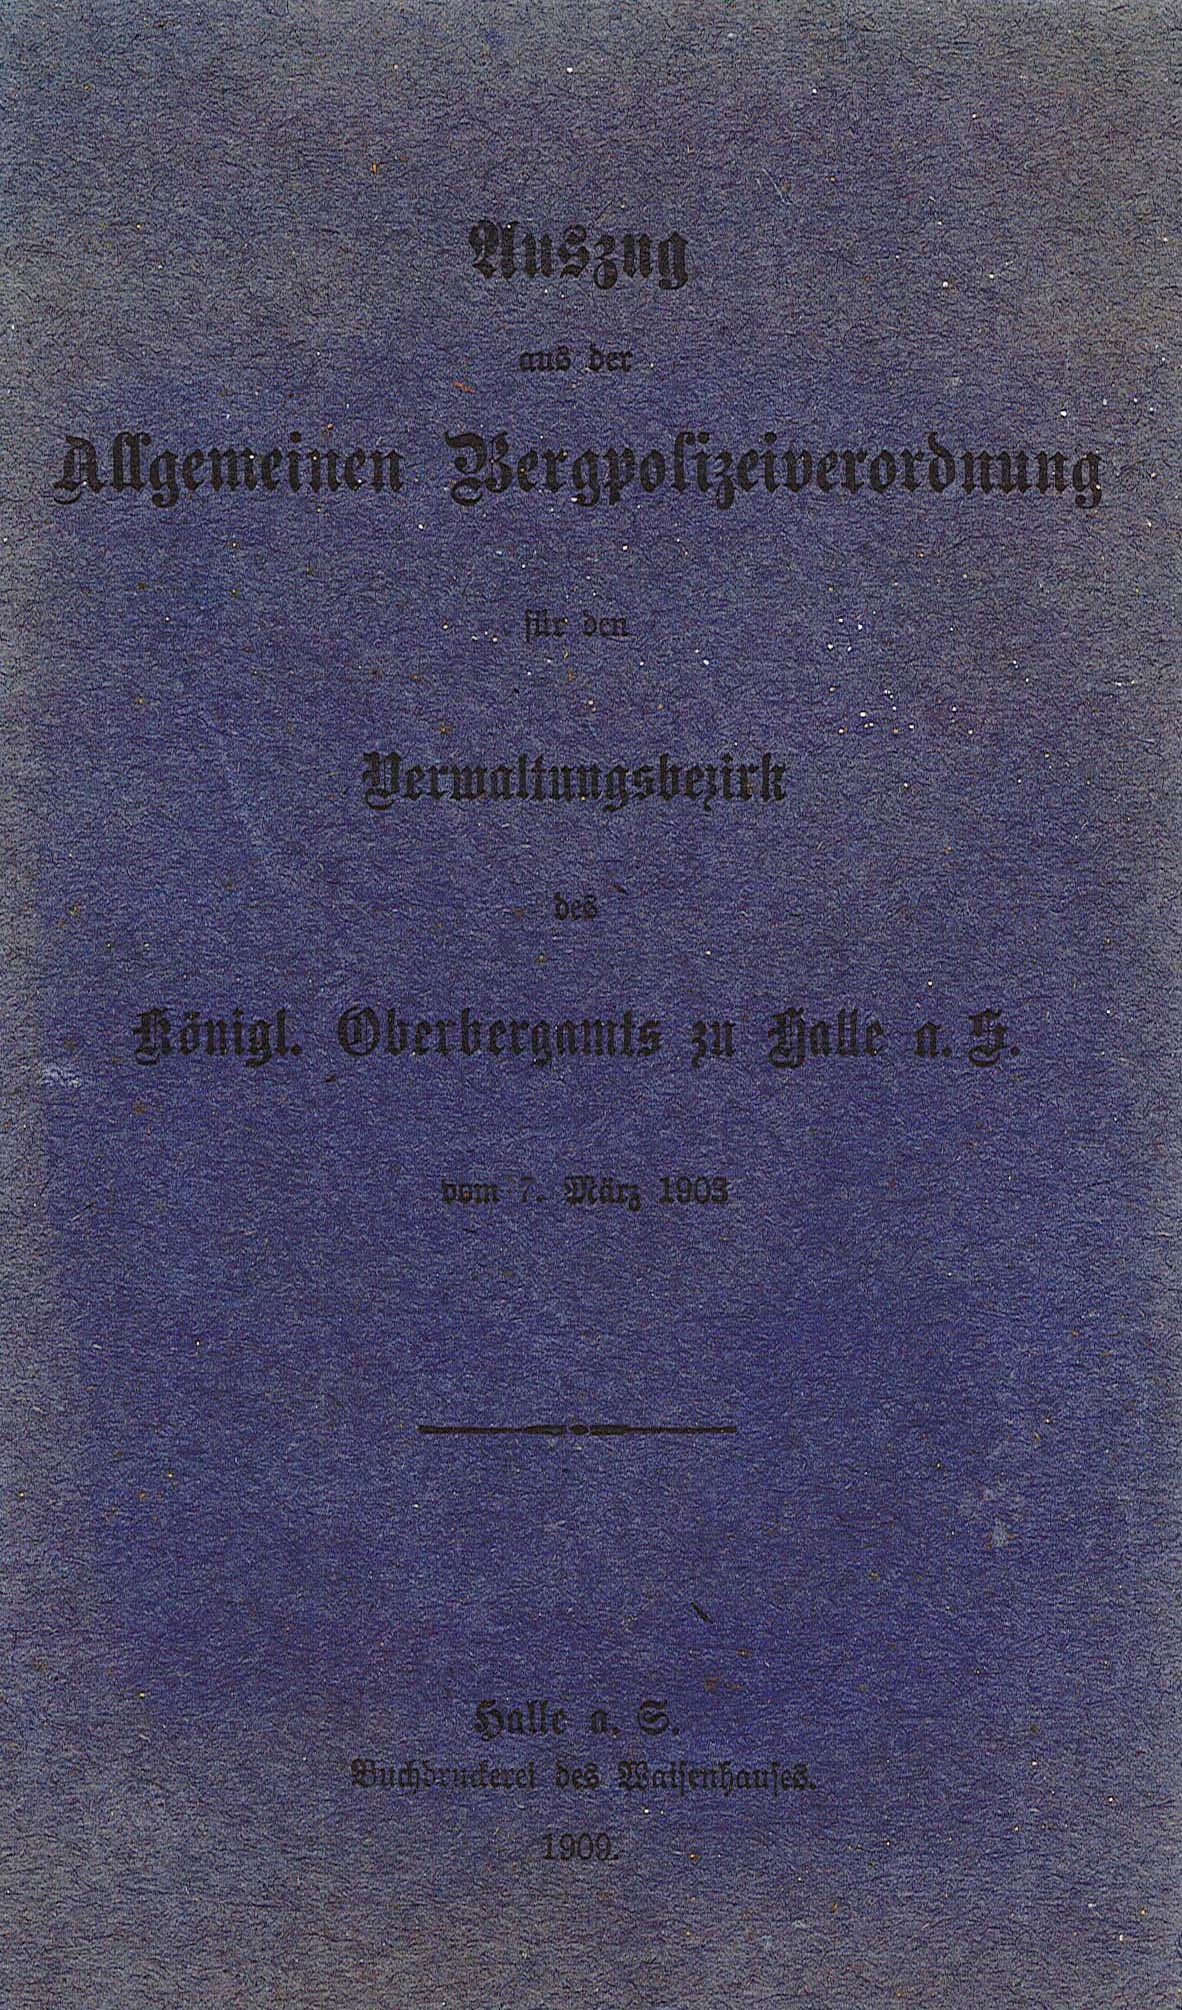 Auszug aus der Allgemeinen Bergpolizeiordnung für den Verwaltungsbezirk des Königlichen Oberbergamts zu Halle a. S., 1903 (Museum Wolmirstedt RR-F)